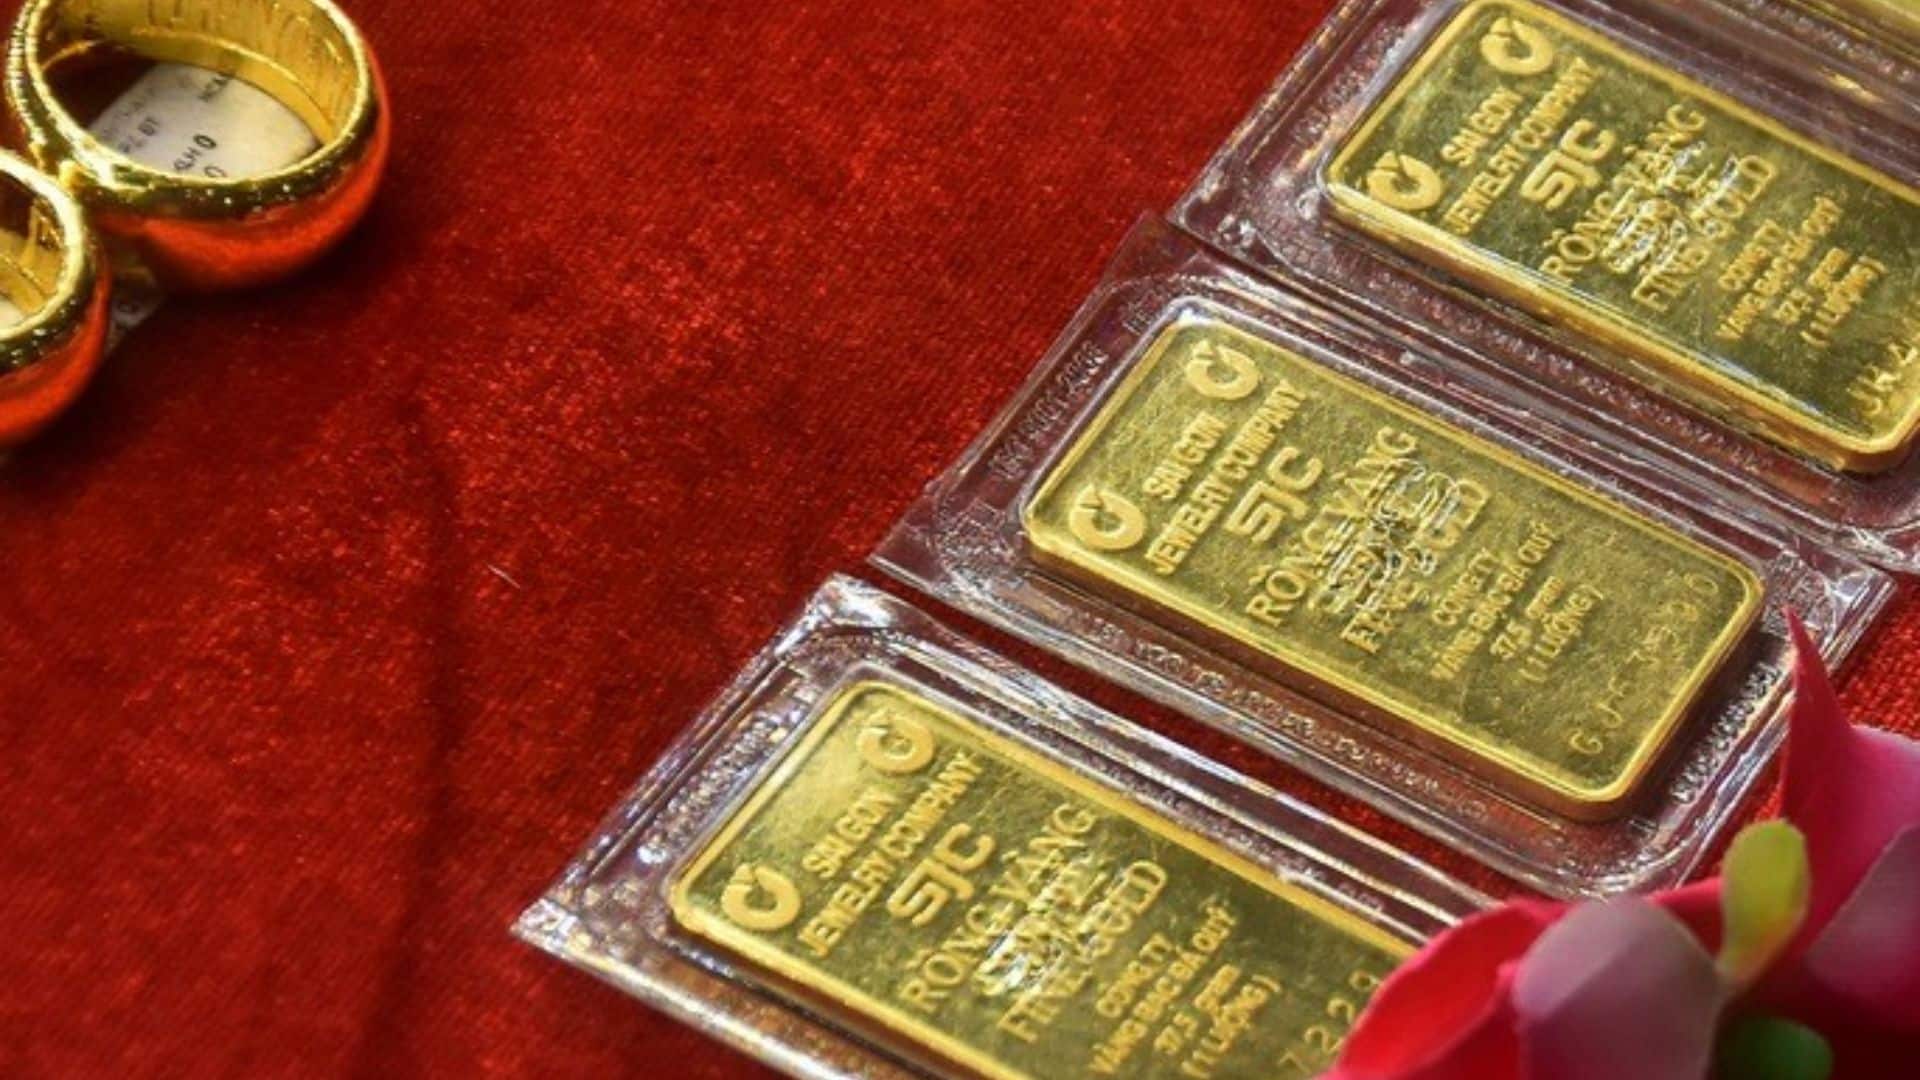 SJC Đà Nẵng - Chuyên kinh doanh vàng bạc, đá quý